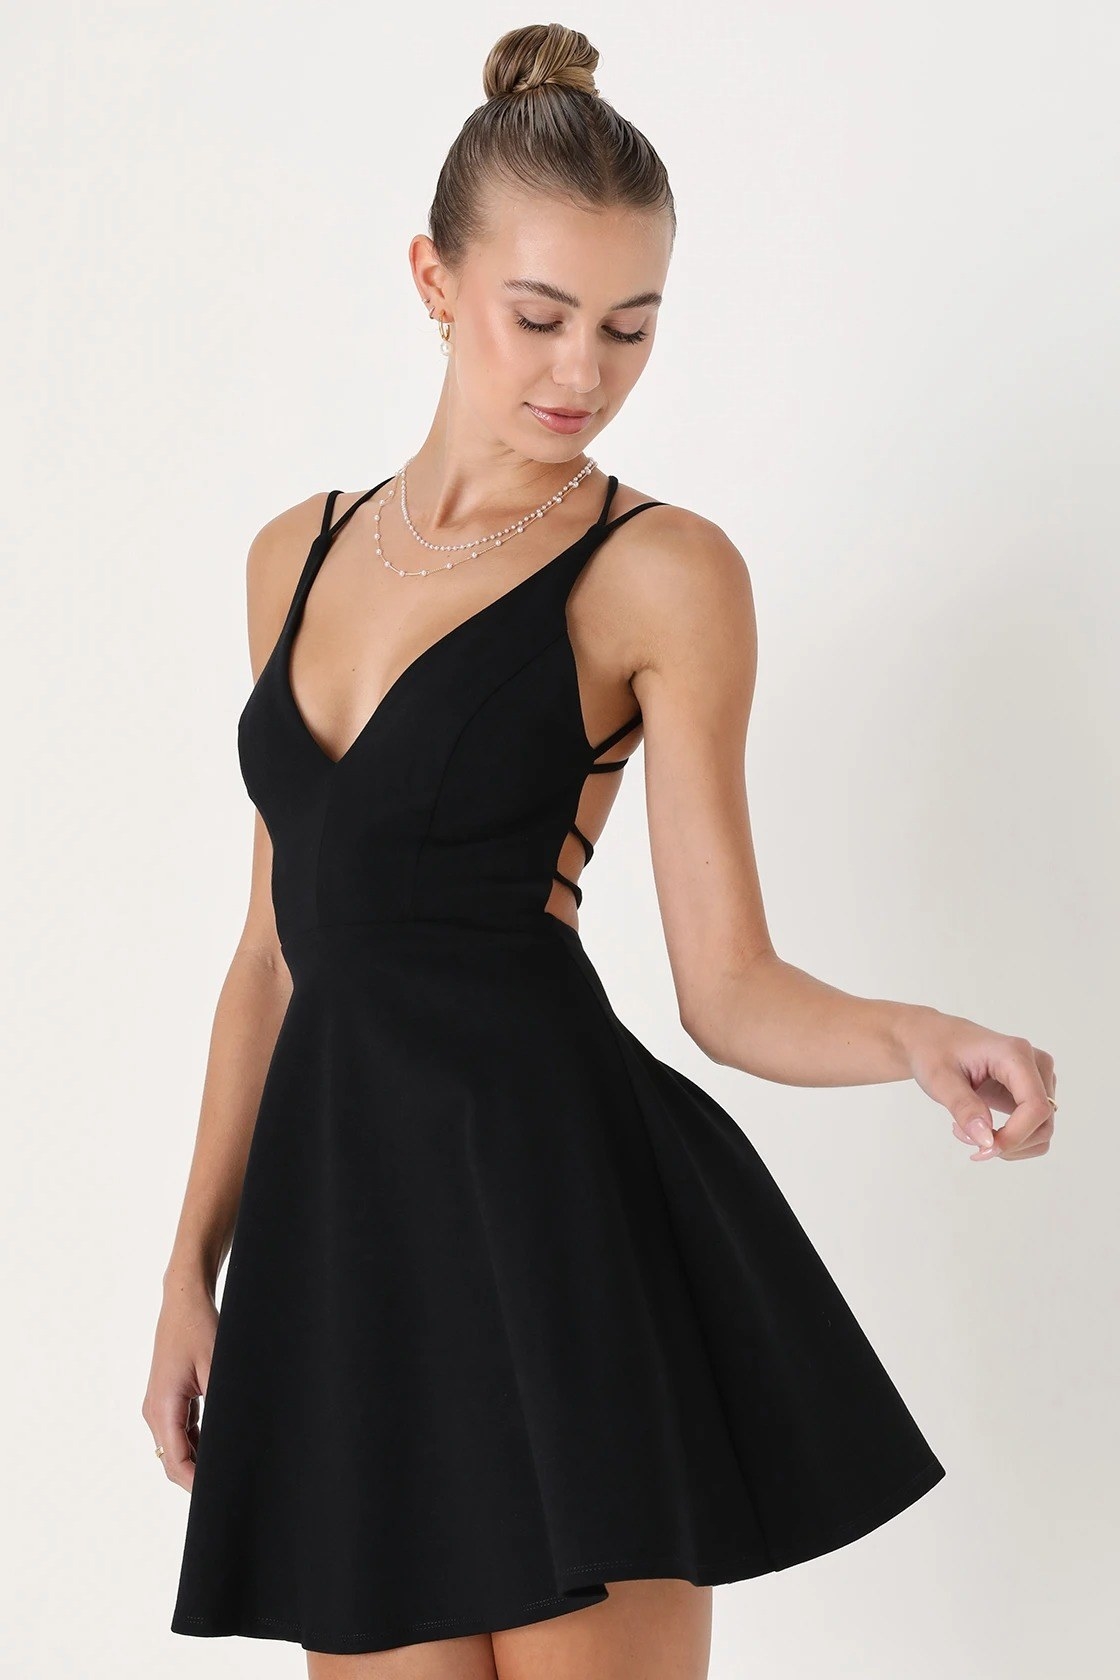 model wearing the black skater dress